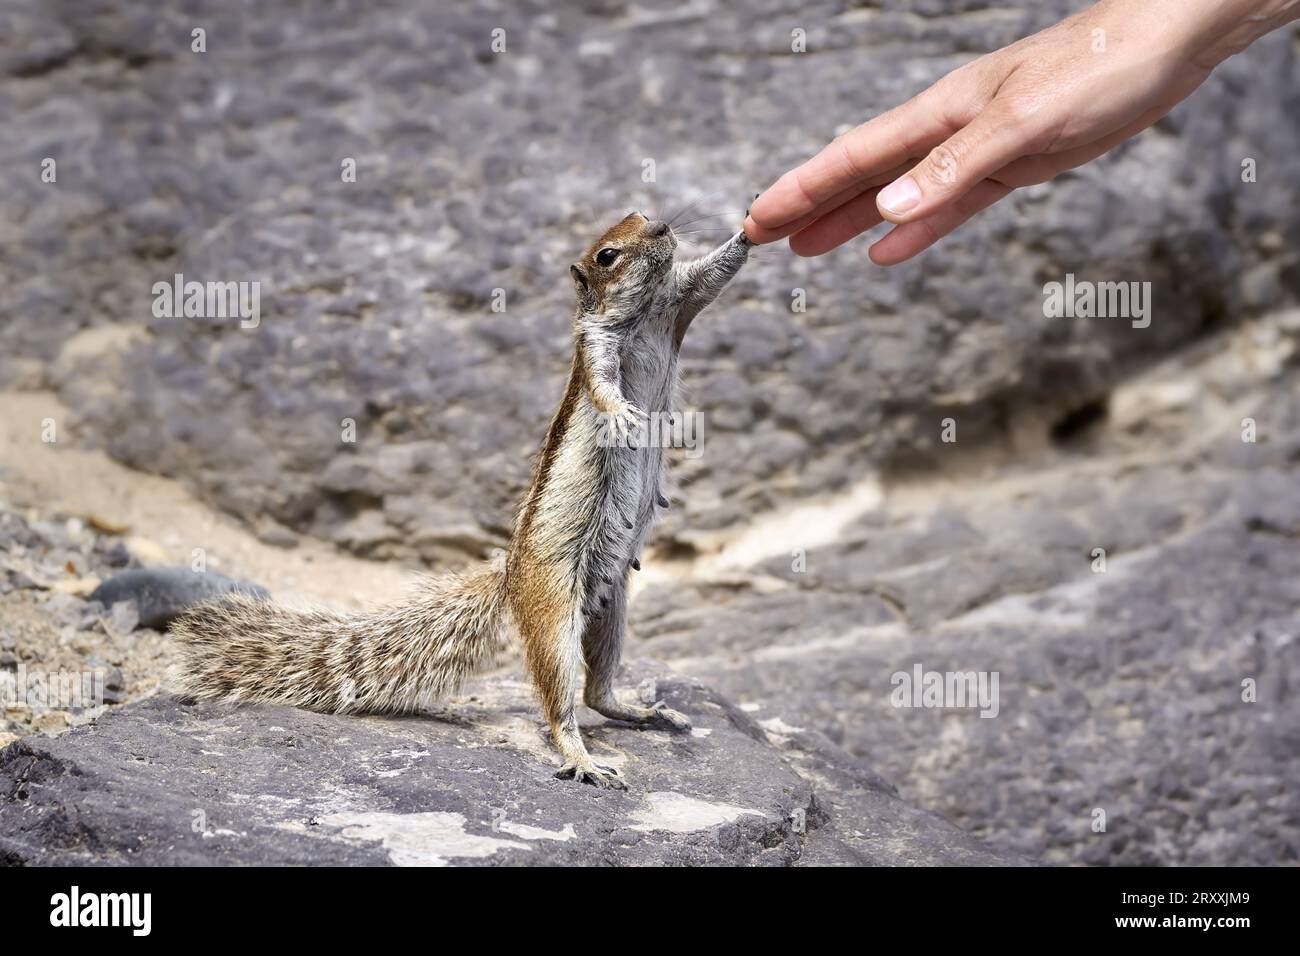 Berbergrundhornhörnchen (Atlantoxerus getulus) stehend stehend weiblich, eine menschliche Hand berührend Stockfoto